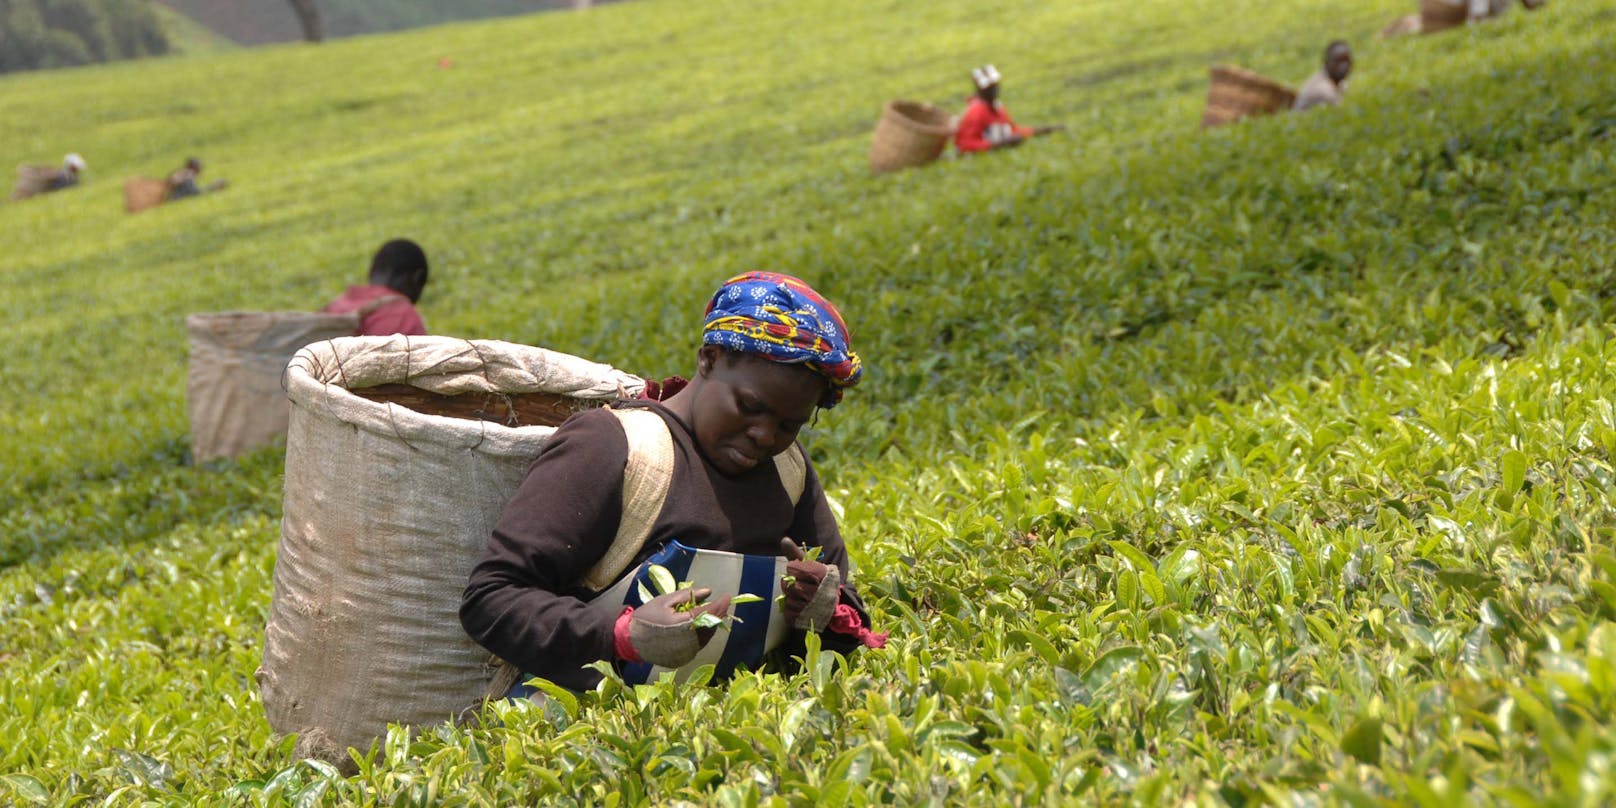 Auf Tee-Plantagen der britischen Firmen Lipton und James Finlay in Kenia sollen Vorgesetzte jahrelang Arbeiterinnen sexuell missbraucht haben. (Symbolfoto)